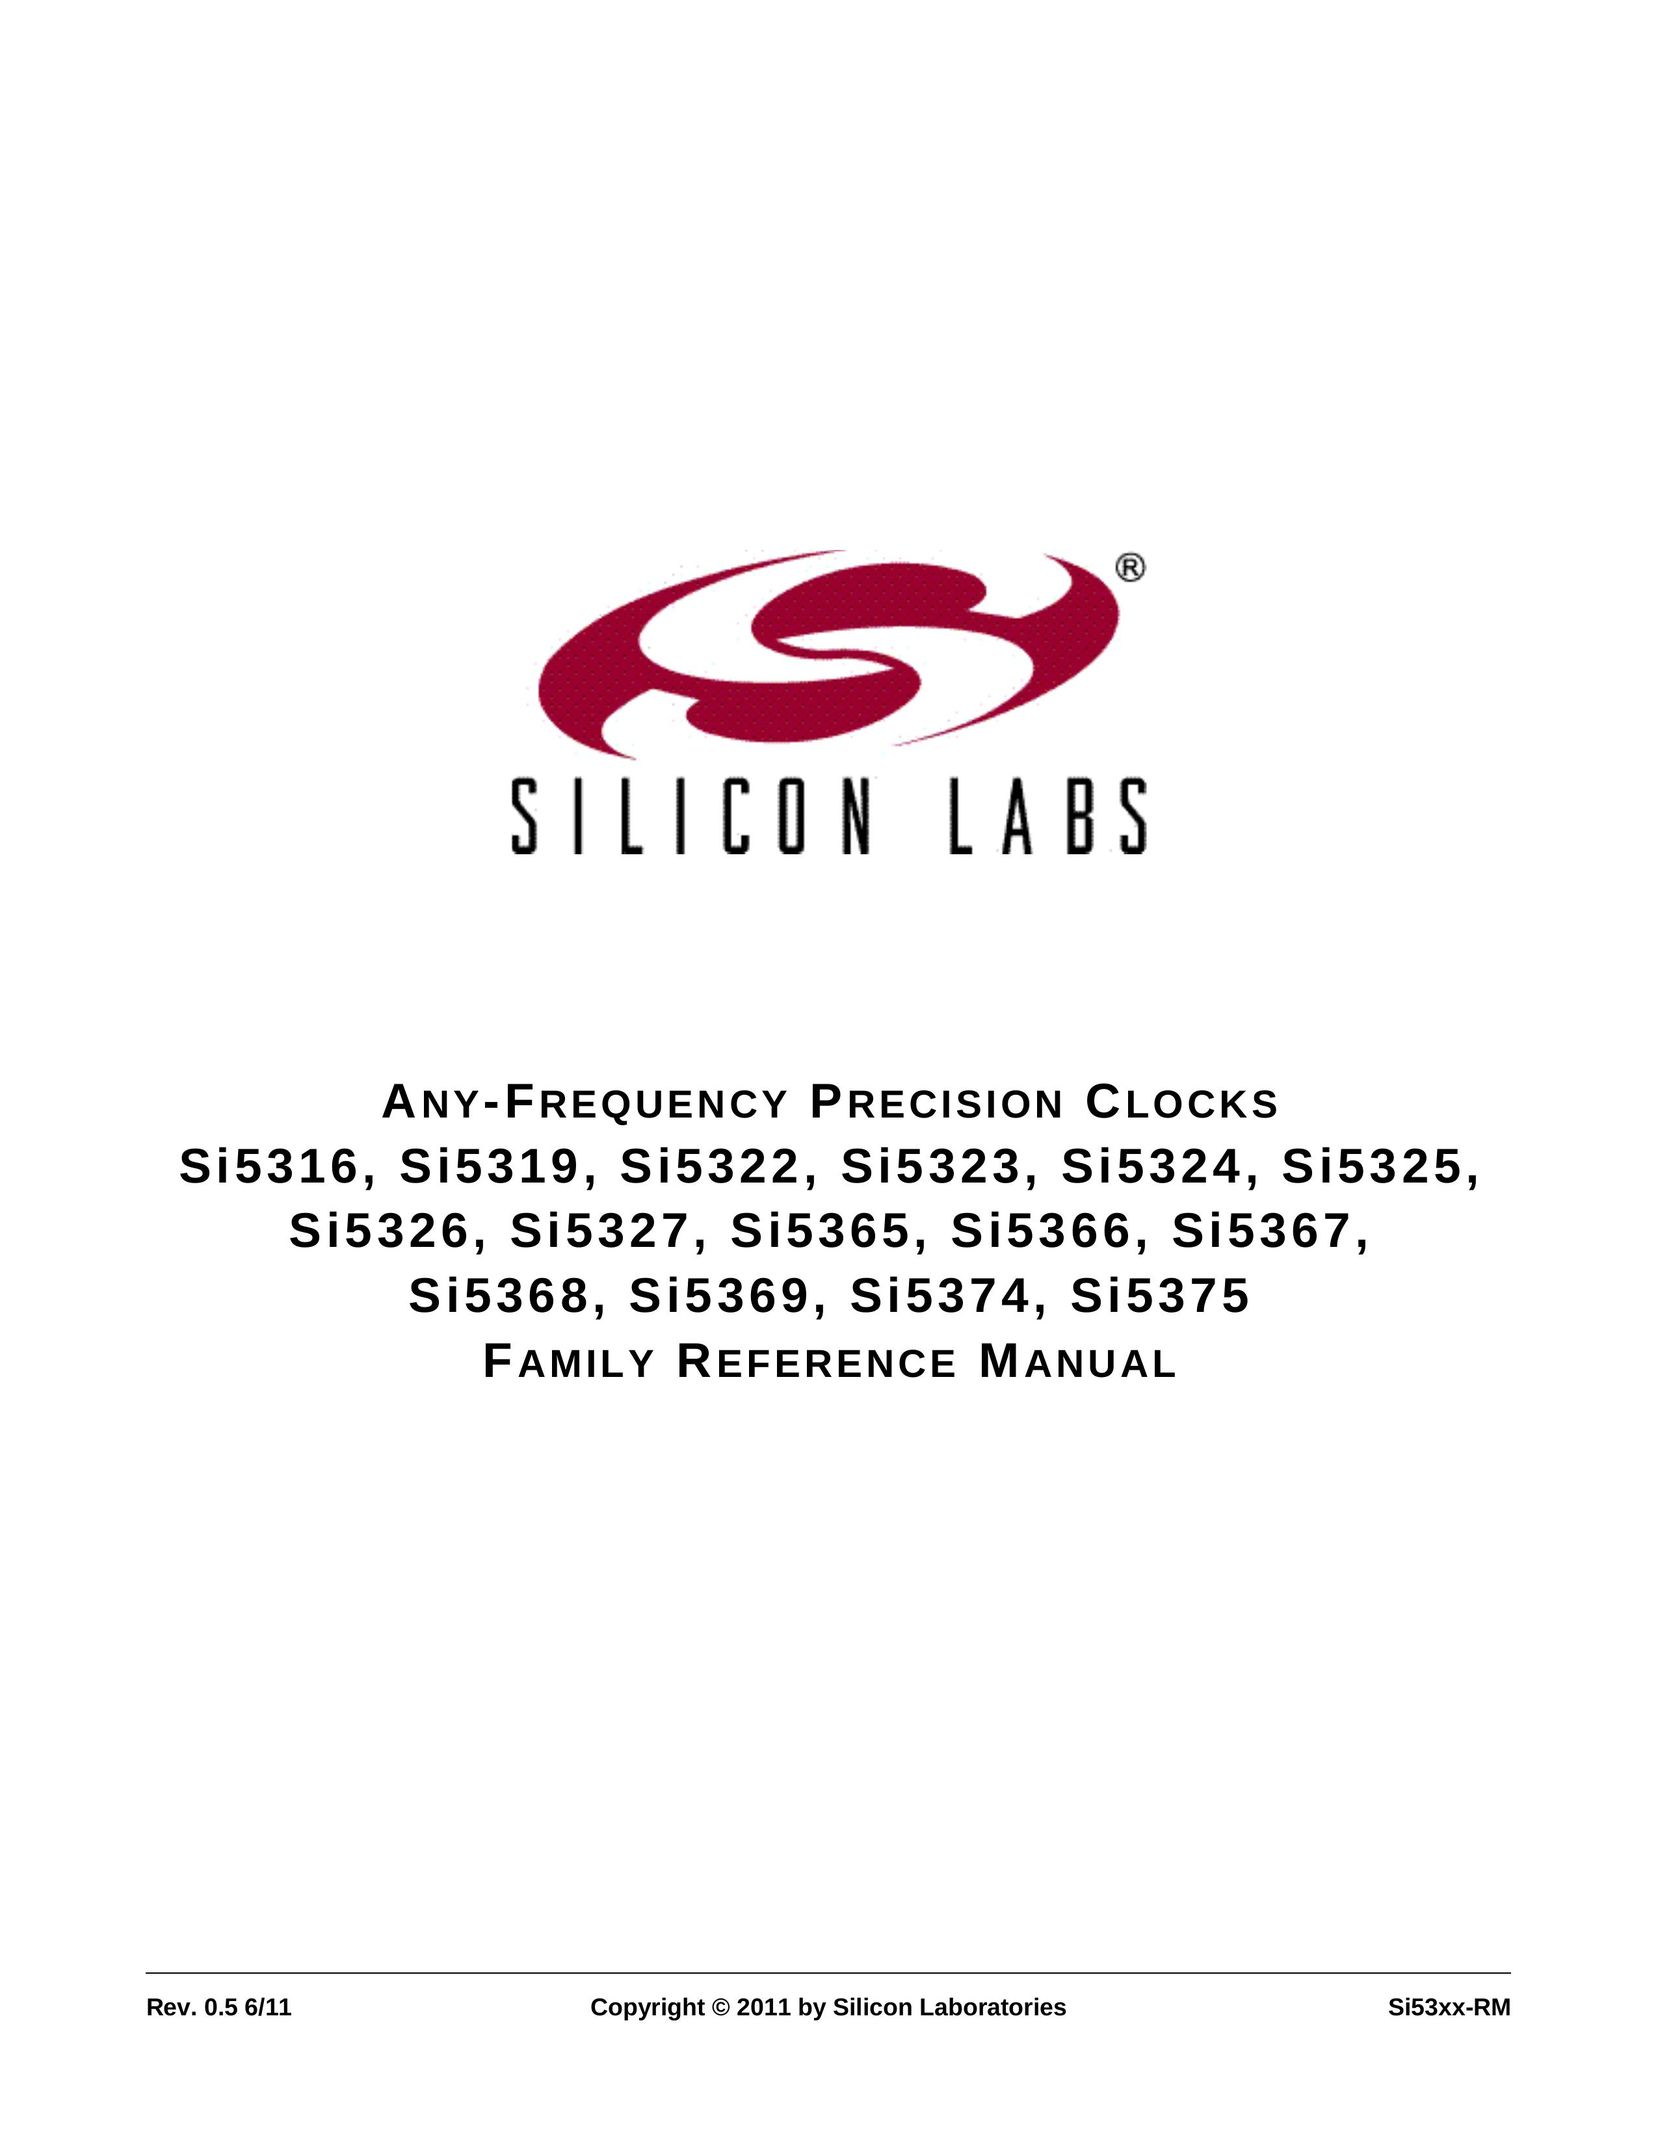 Silicon Laboratories SI5366 Clock User Manual